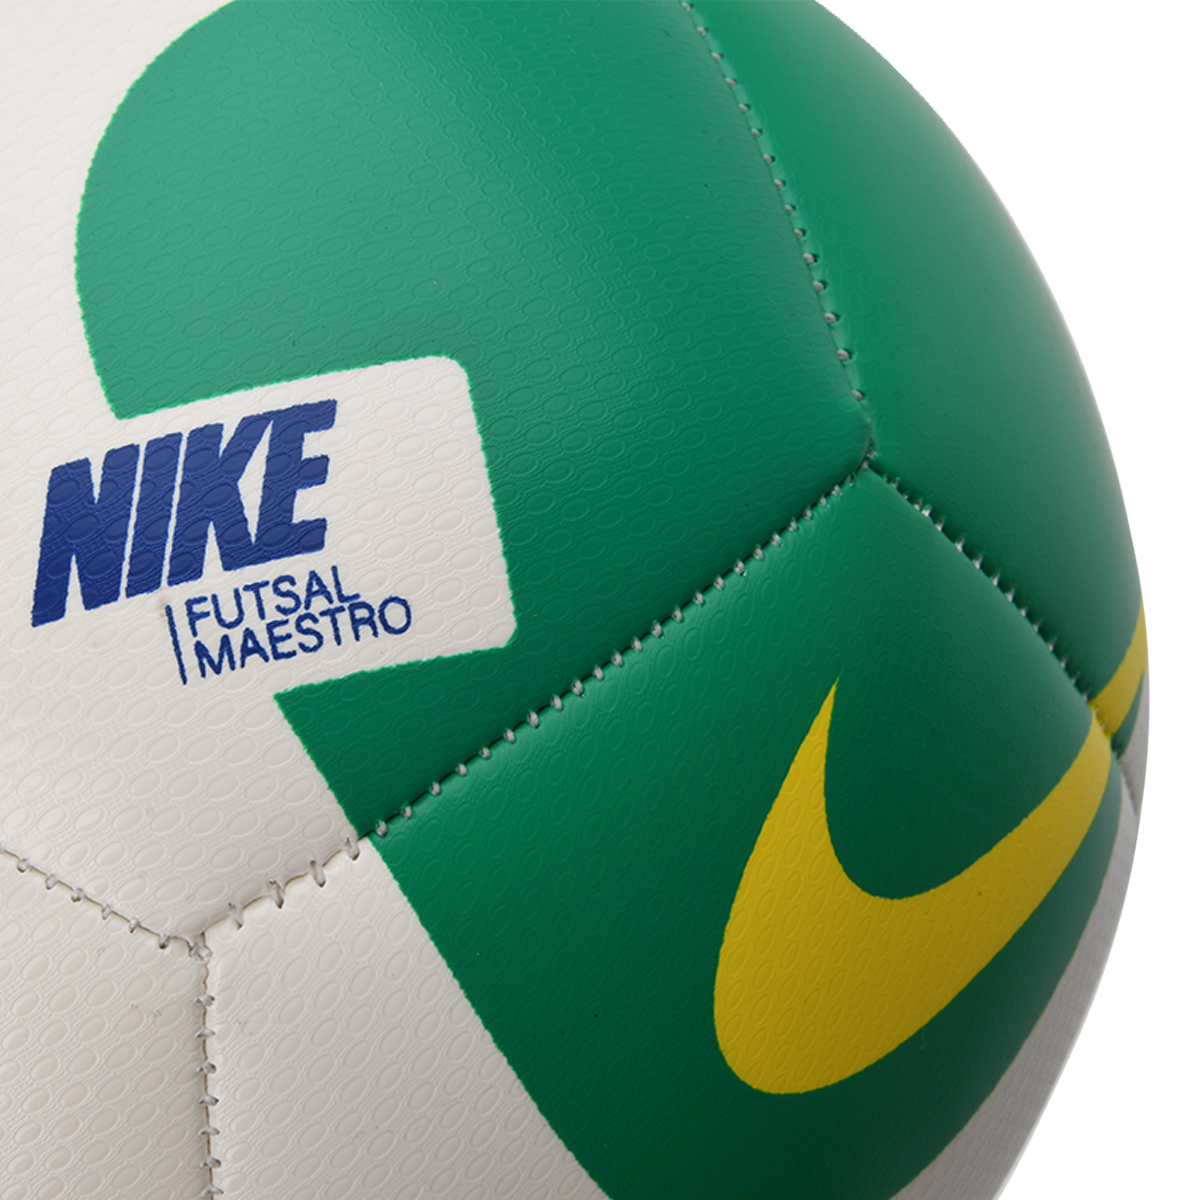 Pelota Nike Futsal Maestro,  image number null